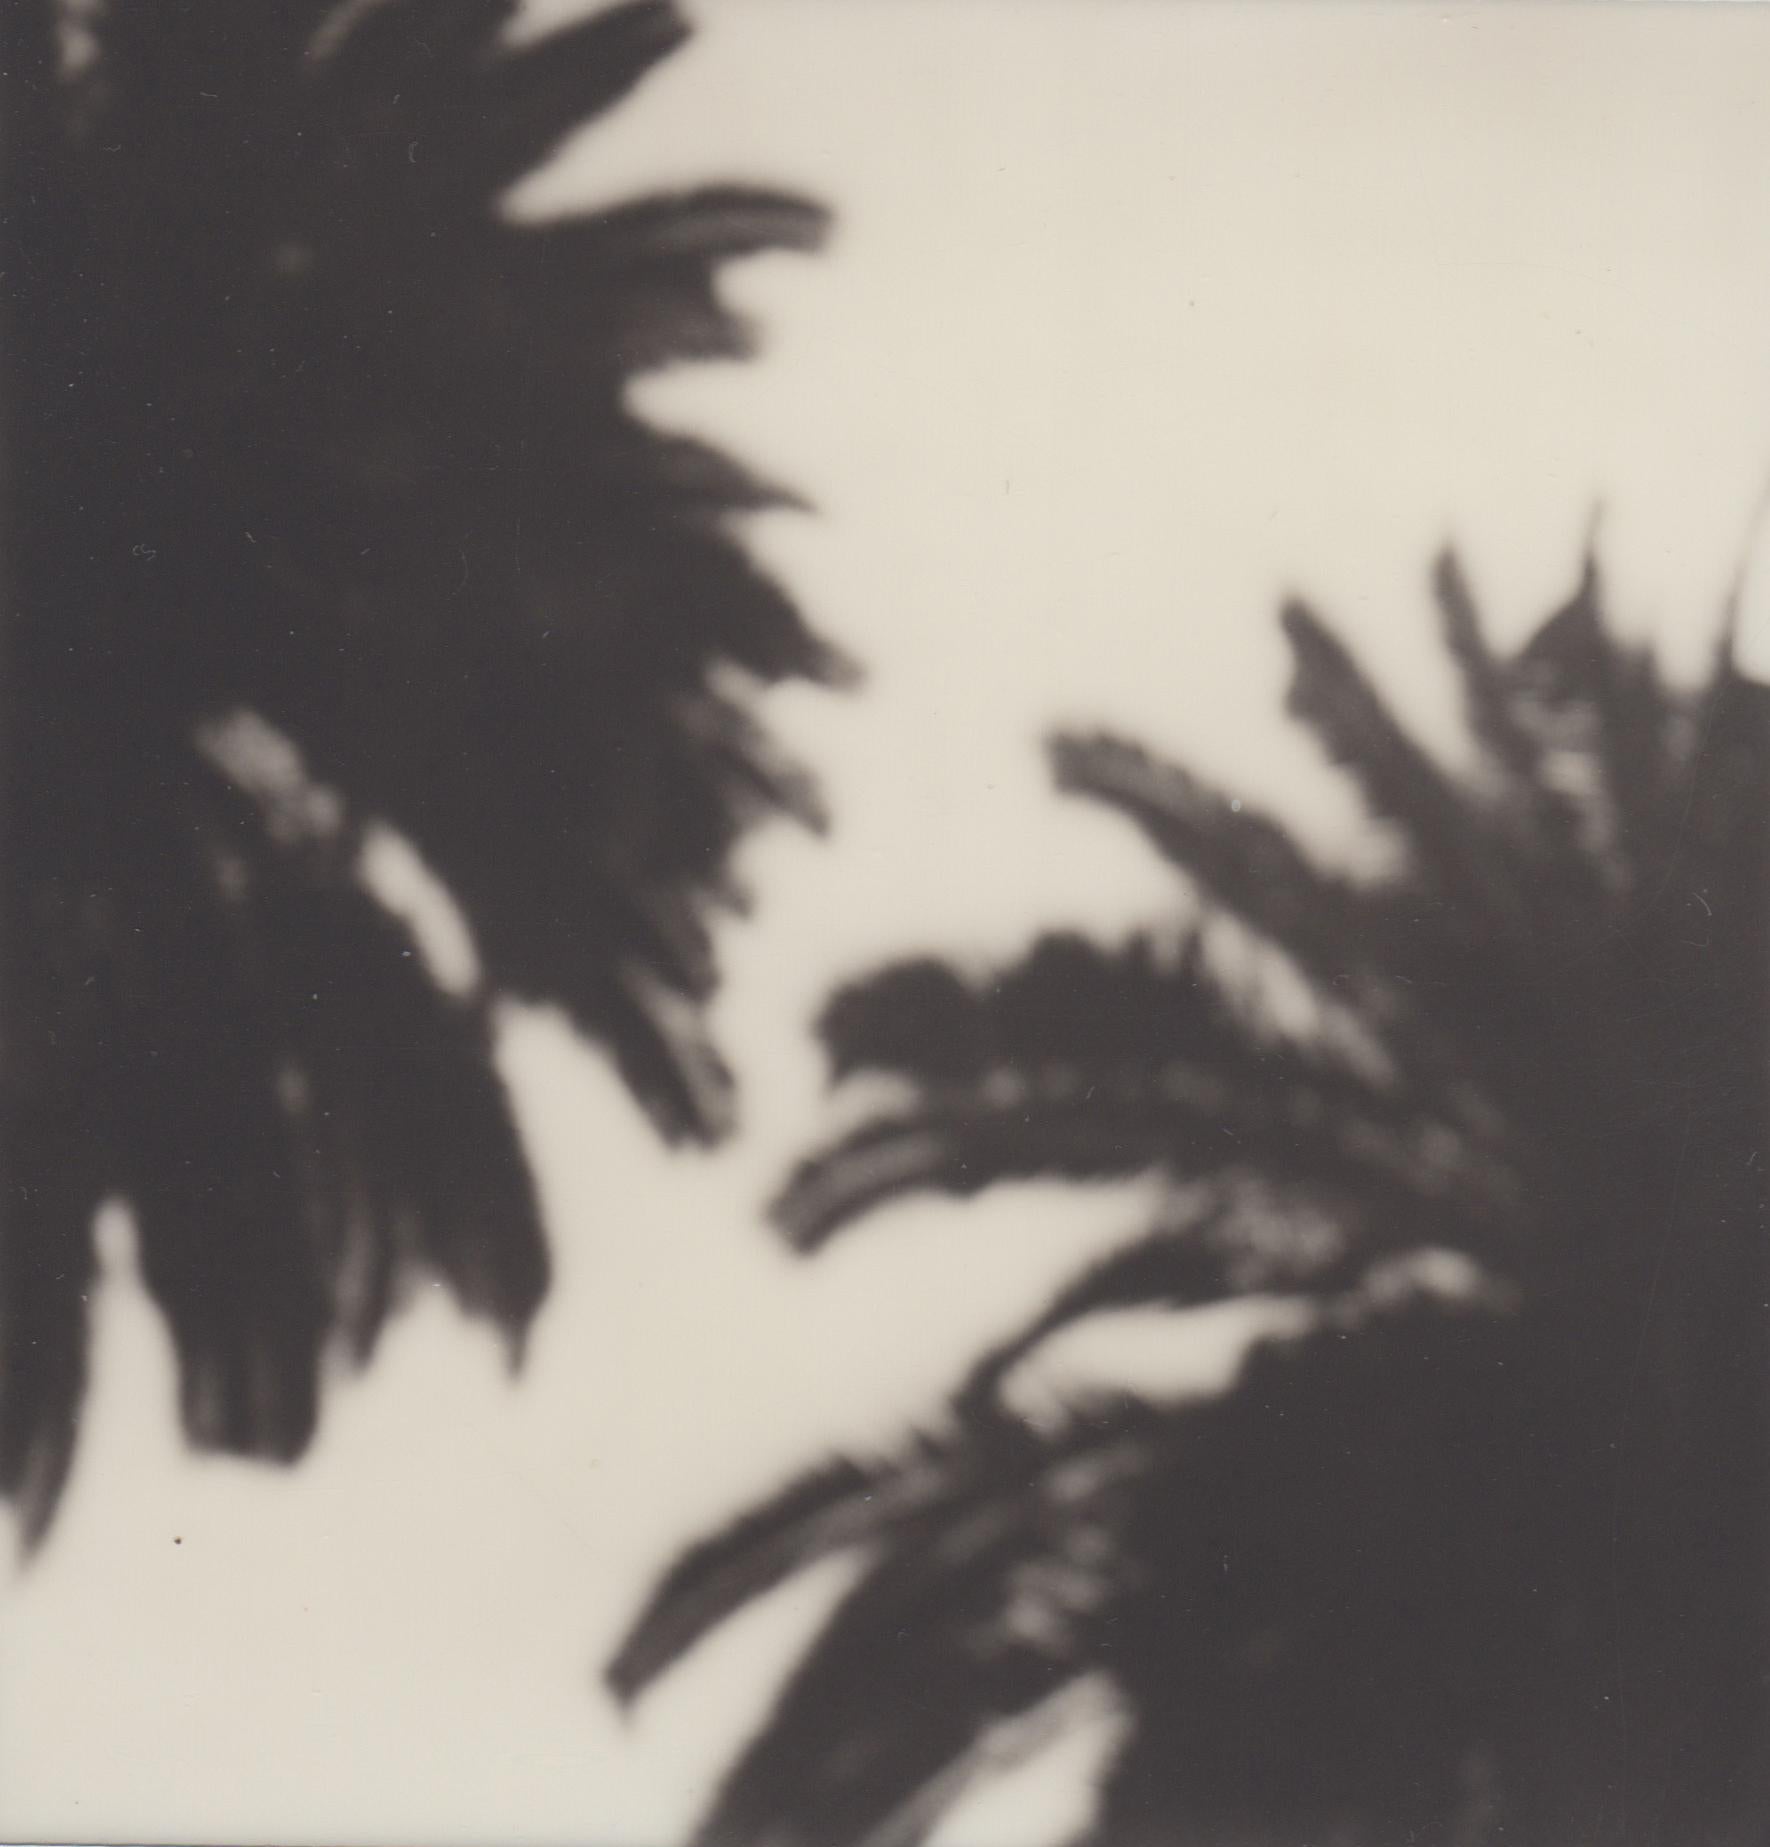 Calm als Palme – zeitgenössischer Schwarz-Weiß-Fotodruck des 21. Jahrhunderts